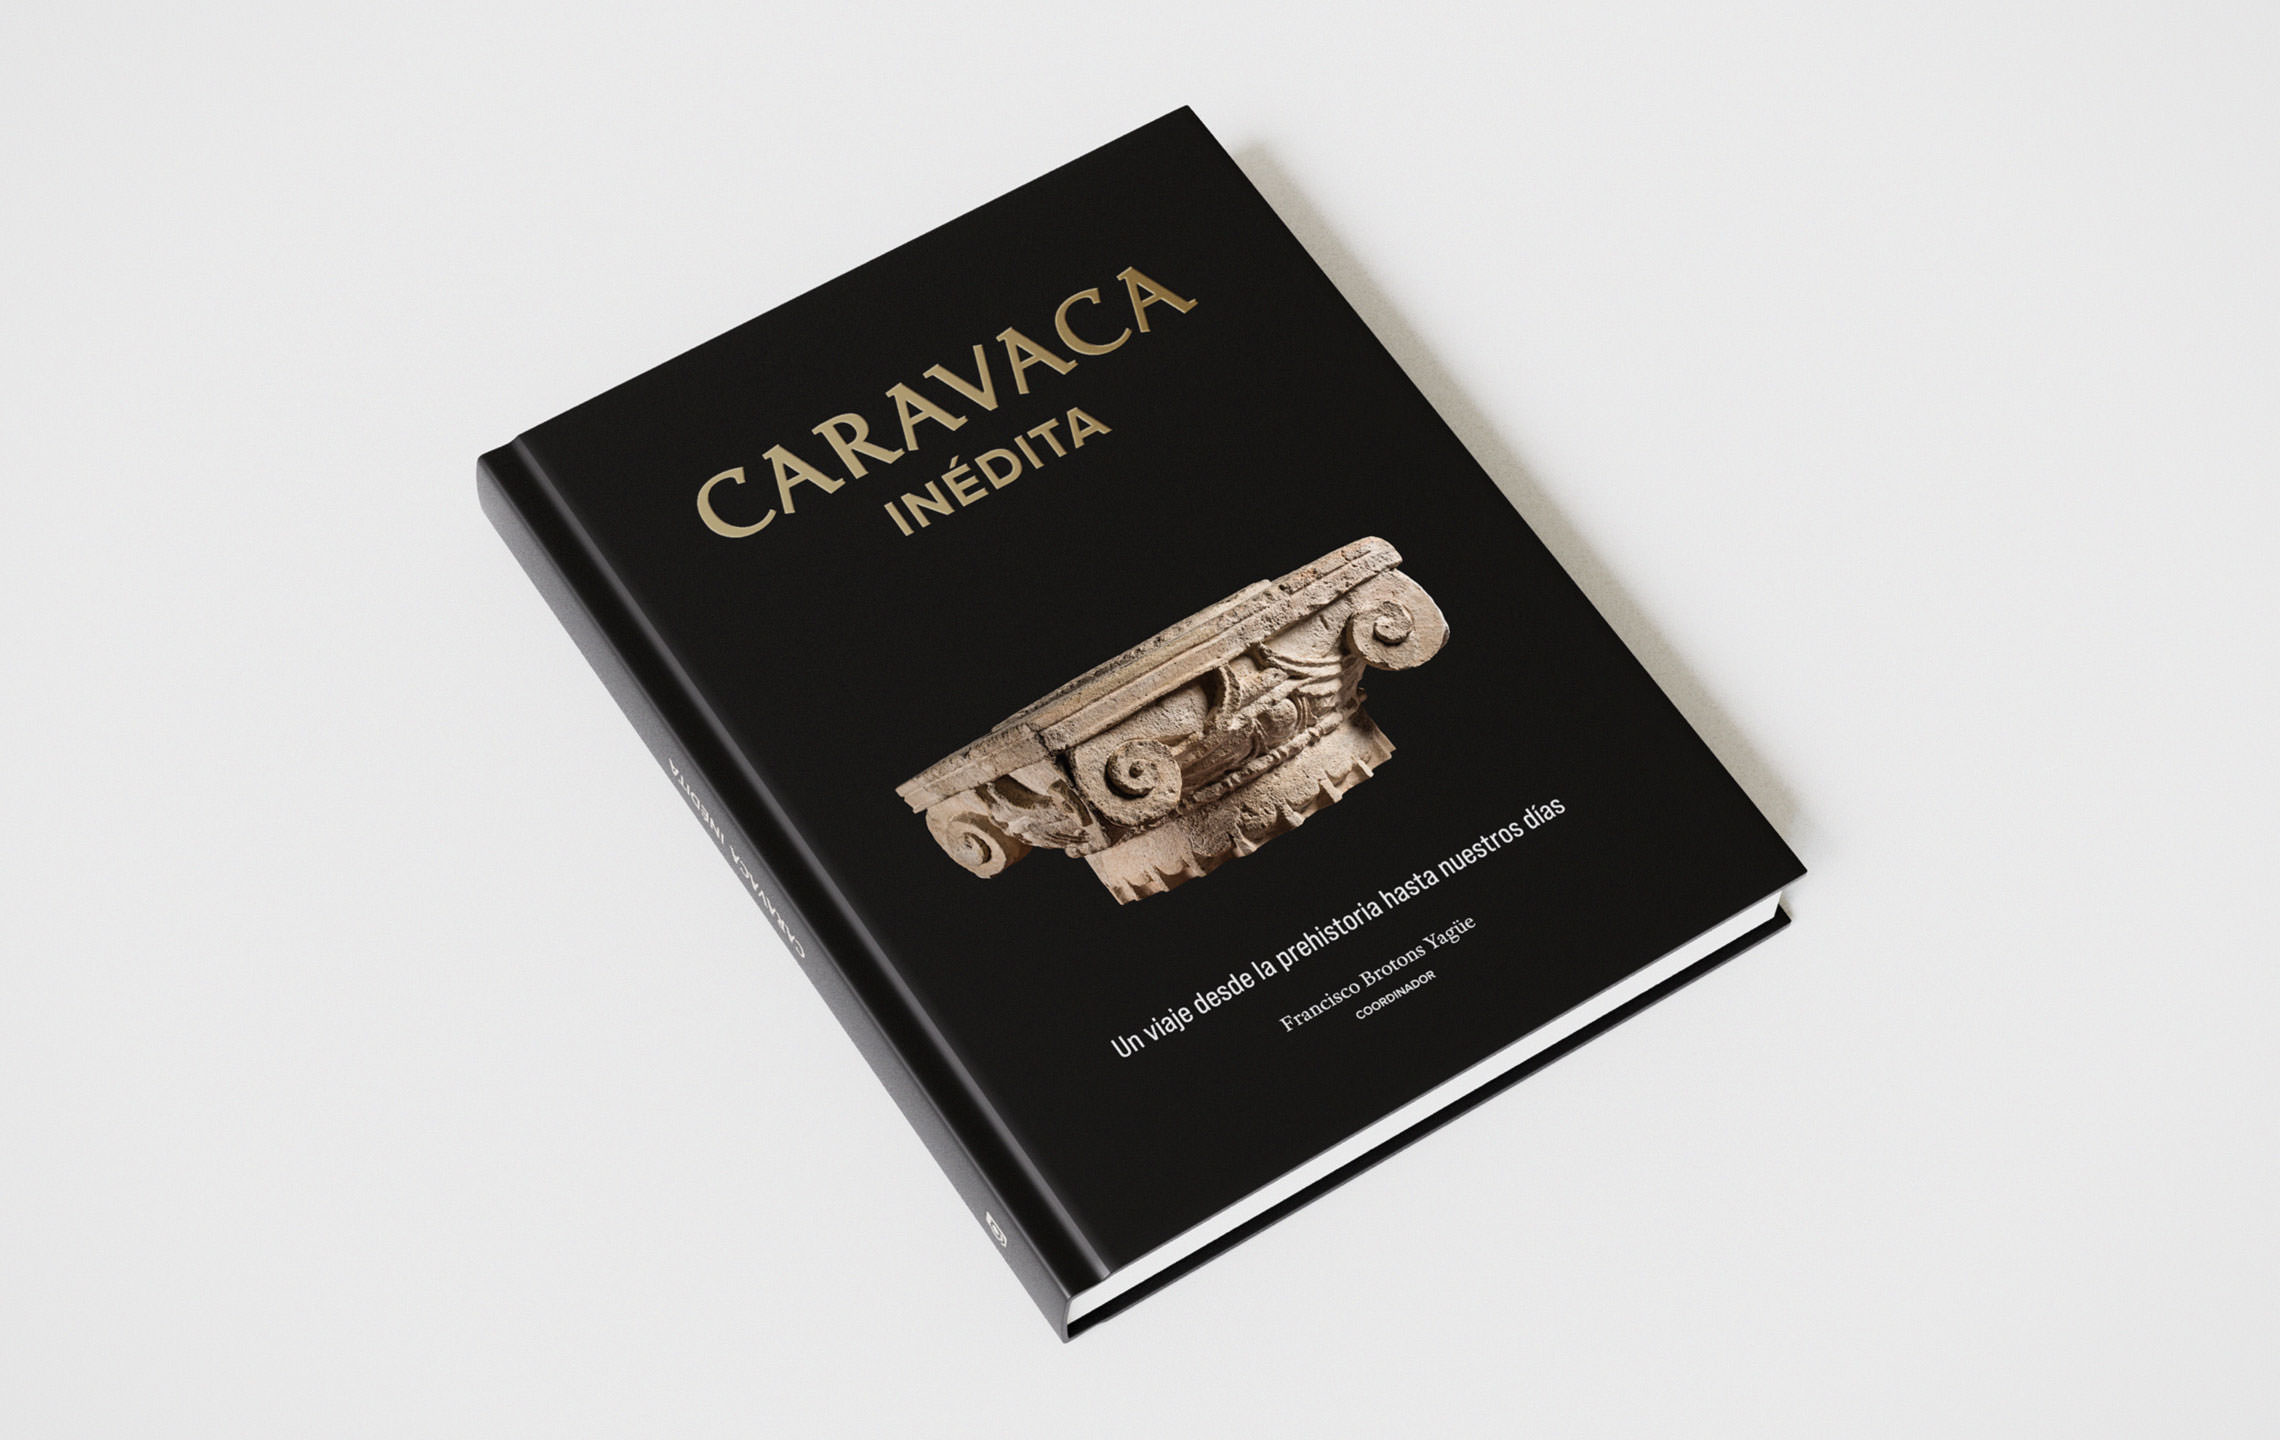 Diseño gráfico y maqueta para el libro ‘Caravaca Inédita’